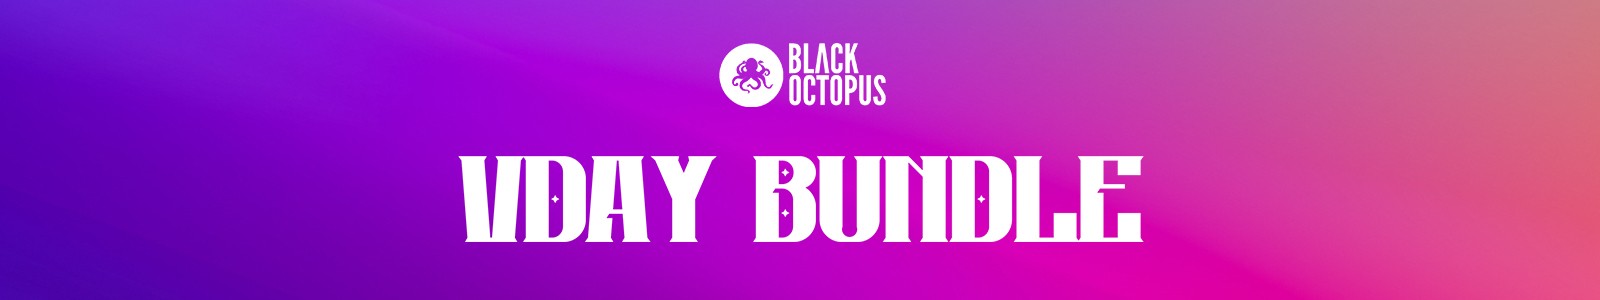 Black Octopus Live Instruments Sample Pack Bundle